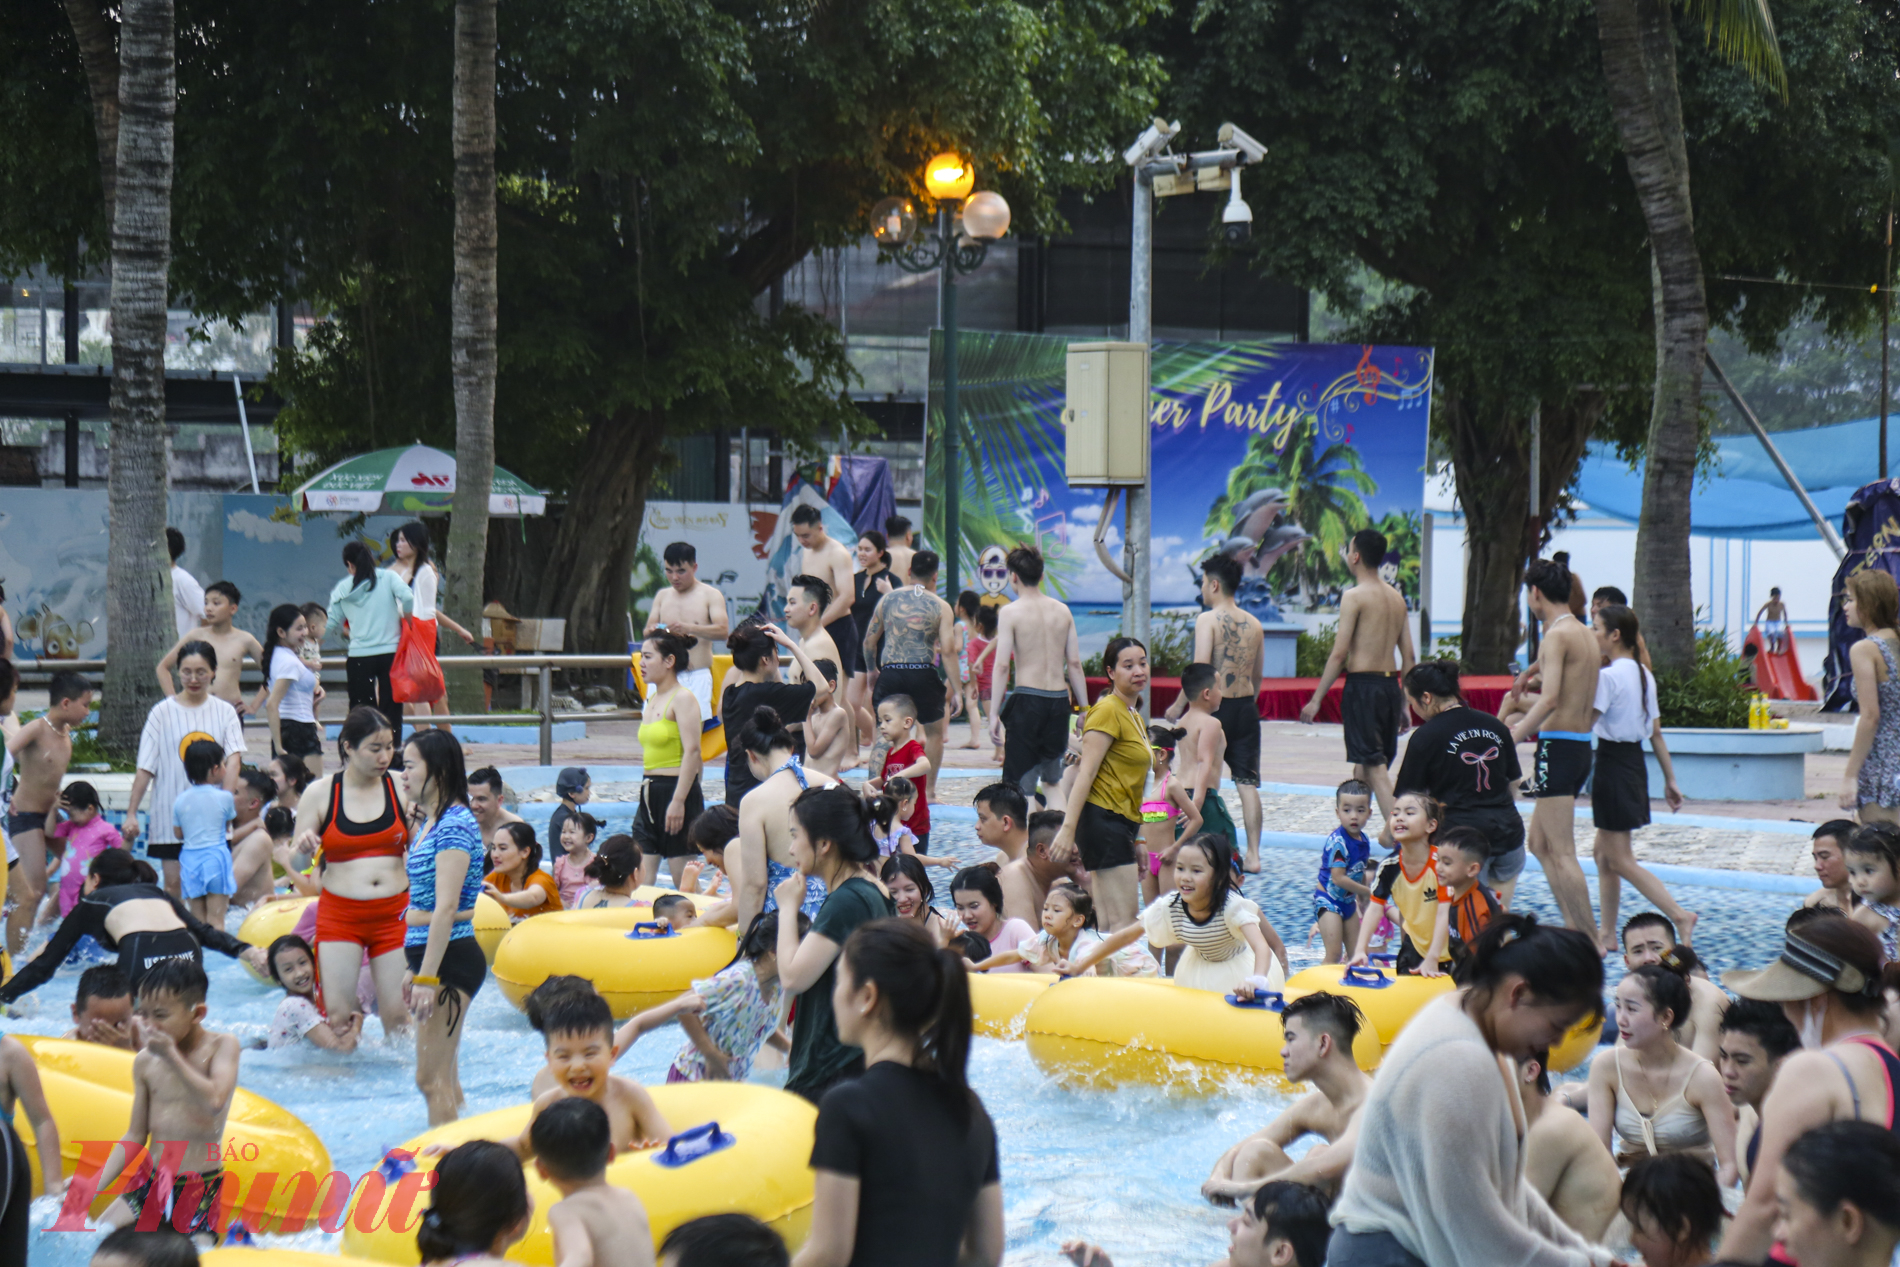 Ghi nhận vào chiều ngày 27/4, tại Công viên nước Hồ Tây (TP Hà Nội), hàng nghìn người dẫn đã đổ về đây để vui chơi trong dịp nghỉ lễ 30/4 – 1/5, đa số là các gia đình có con nhỏ.